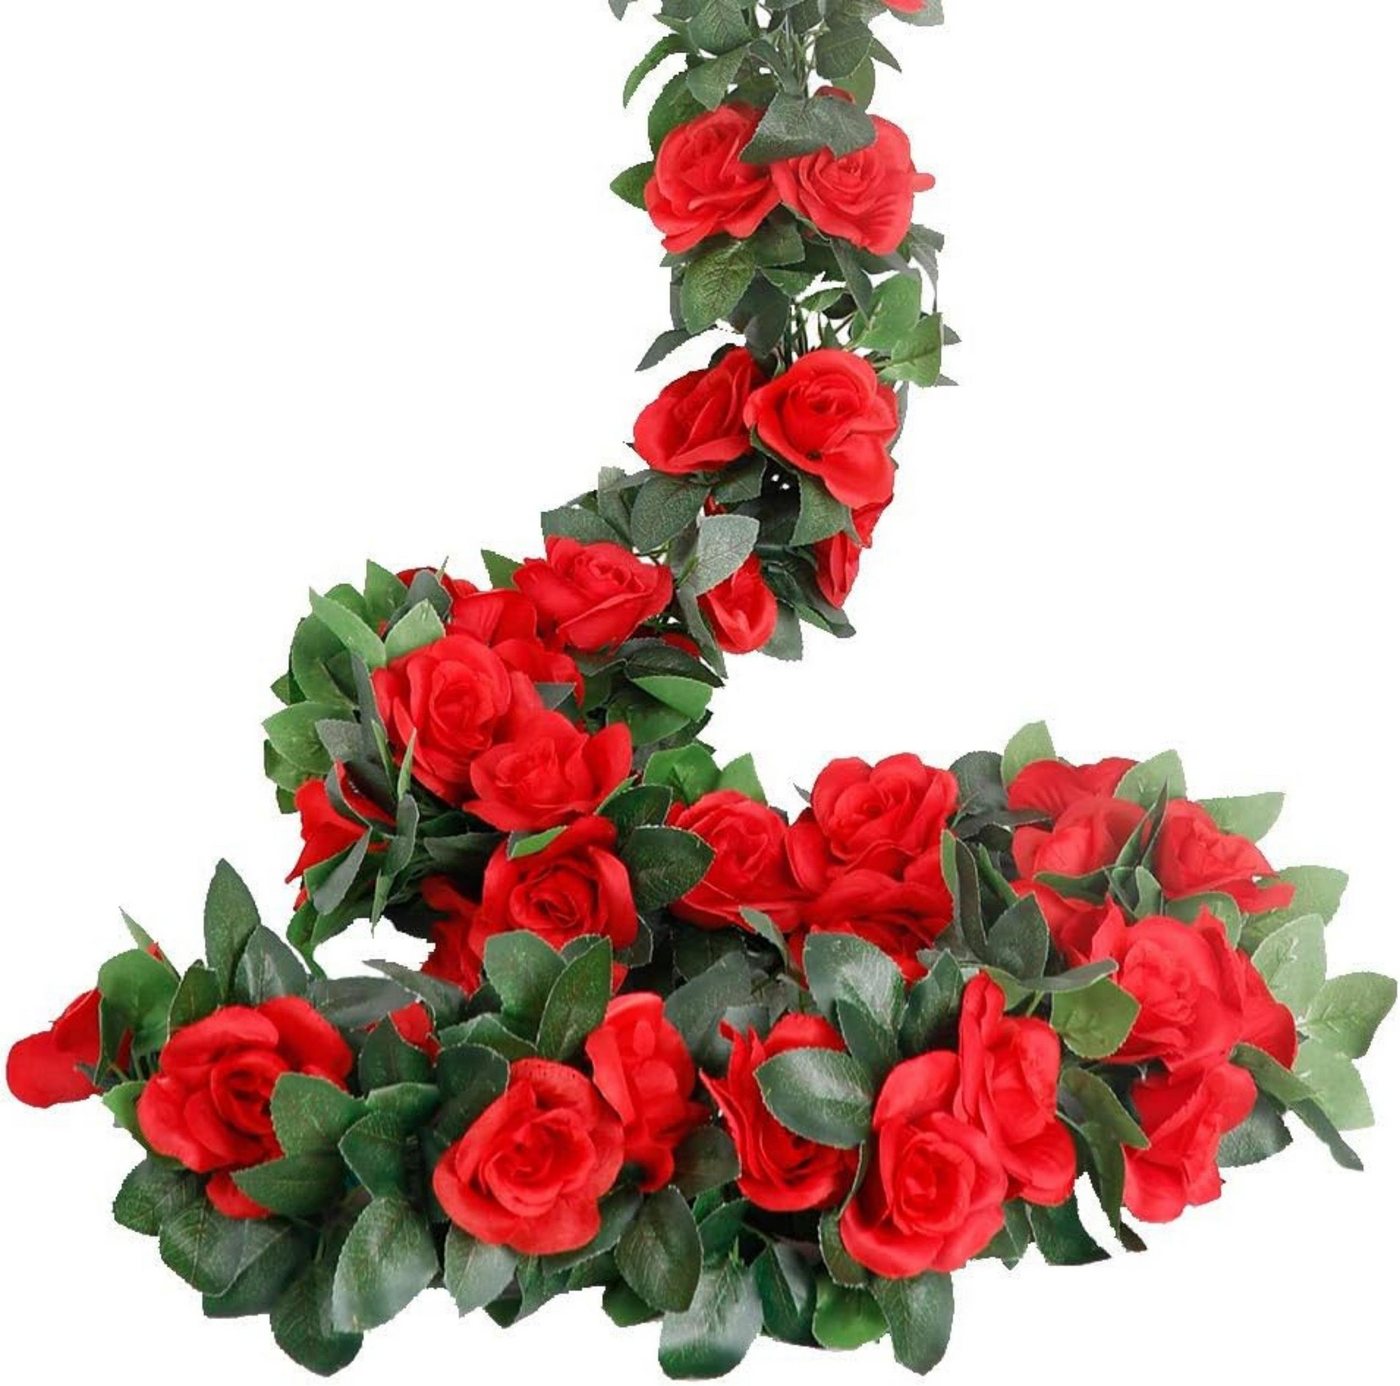 Kunstblumenstrauß osengirlanden künstliche Rosenranken,mit grünen Pflanzen, Coonoor von Coonoor